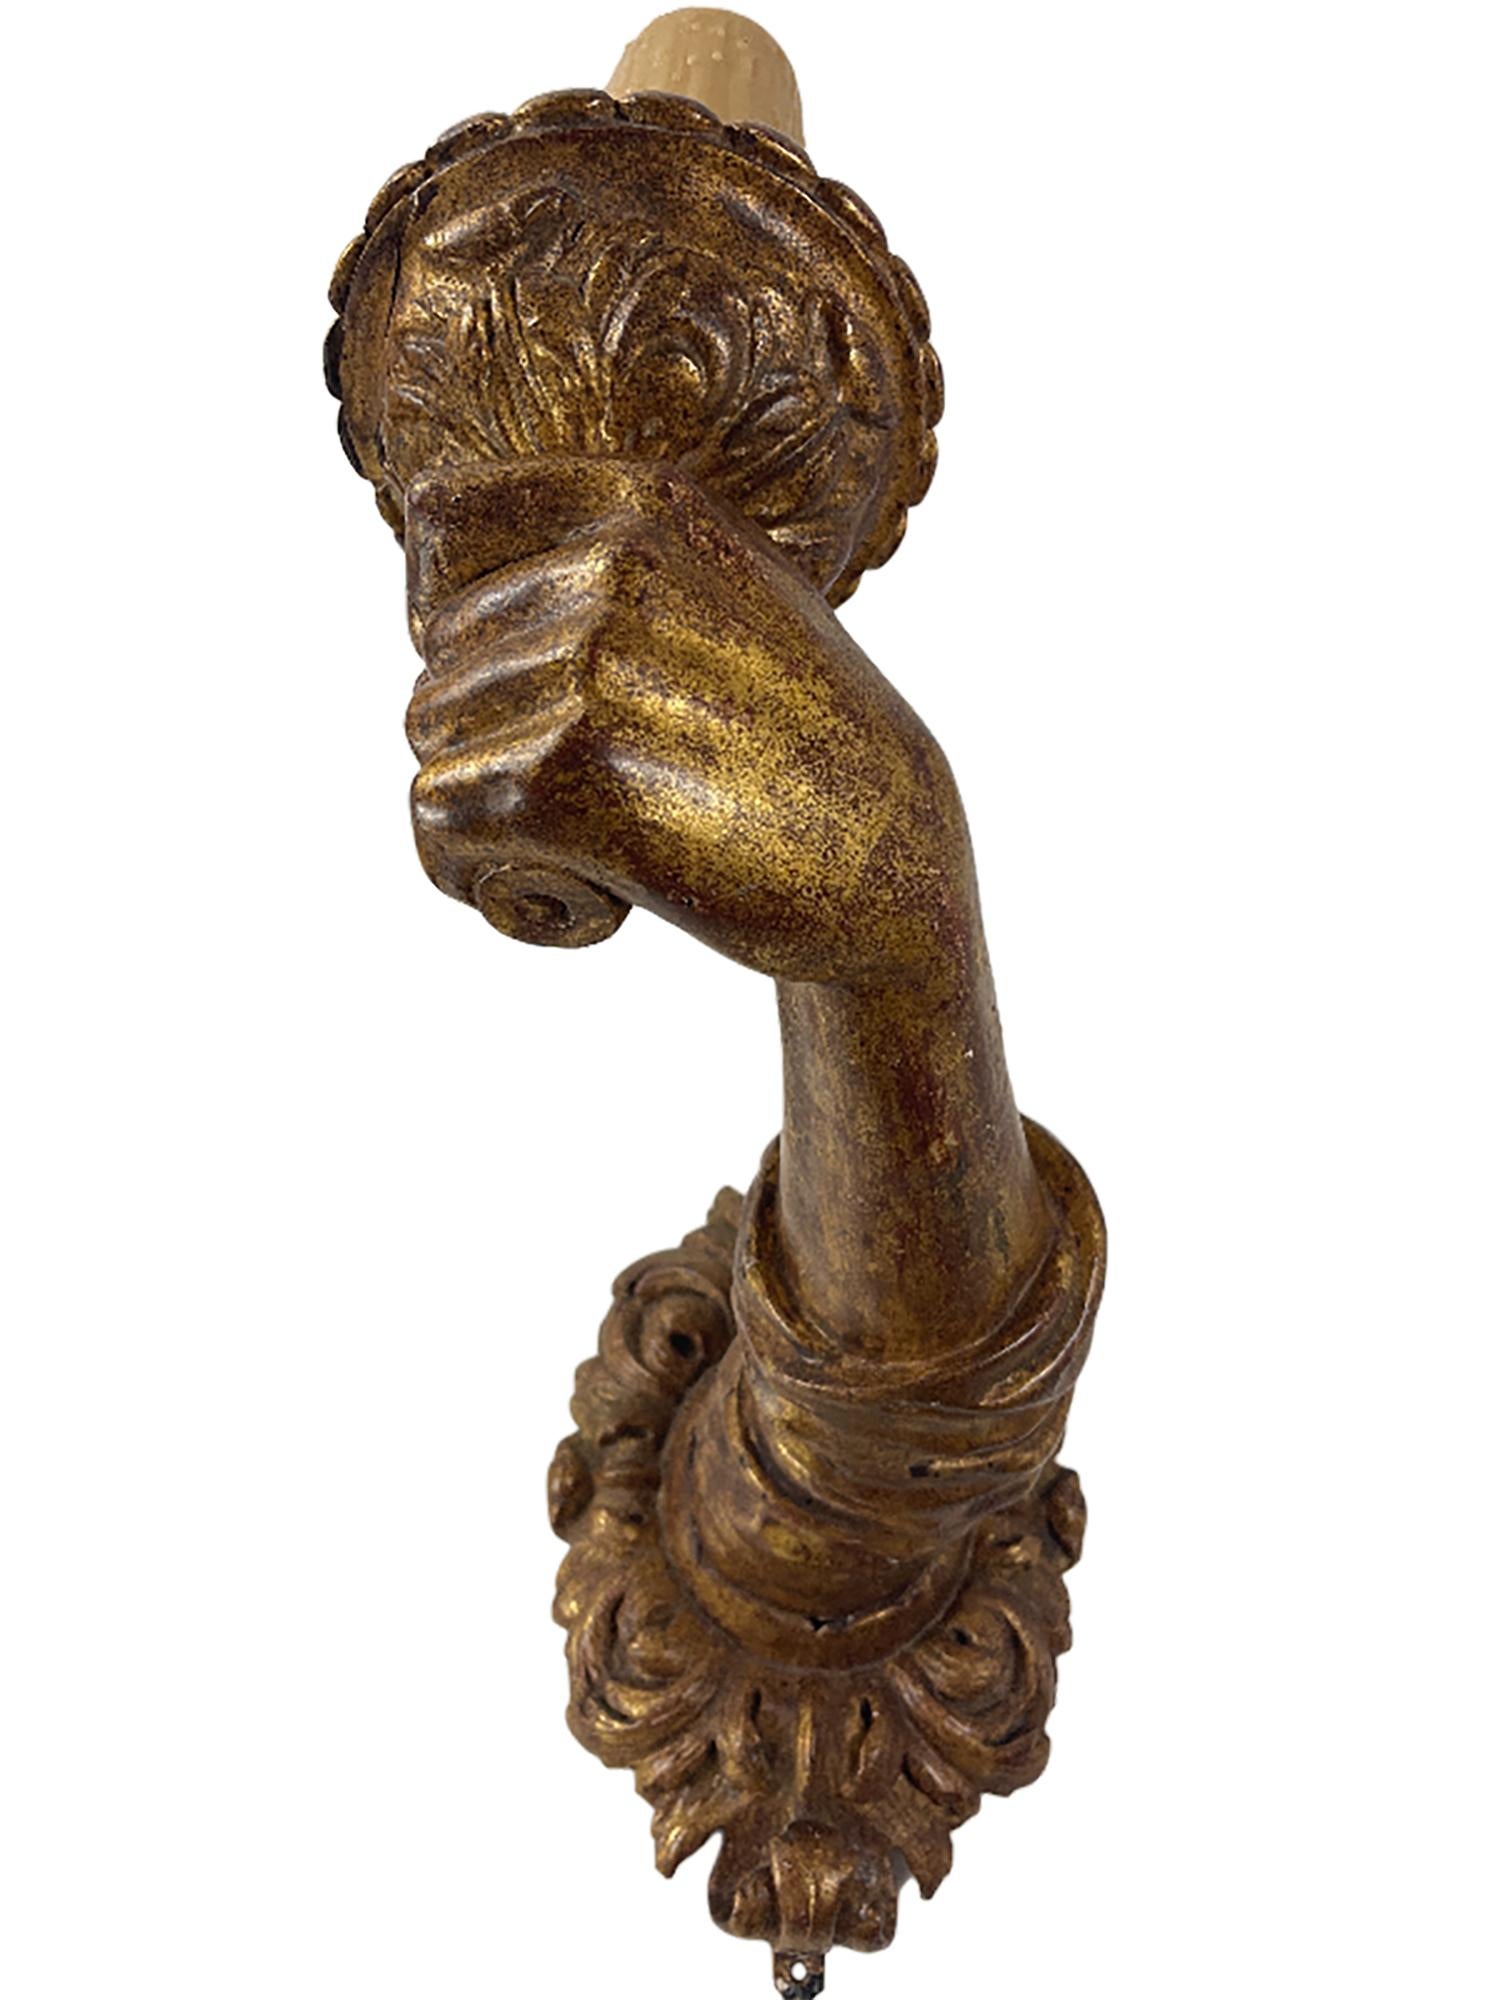 Une belle paire d'appliques en bois doré sculpté à la main, de style baroque italien du 17ème siècle. 

Les bases florales et les manches pliés sont sculptés de manière complexe et les bras assortis sont courbés. Les bras tiennent des torches